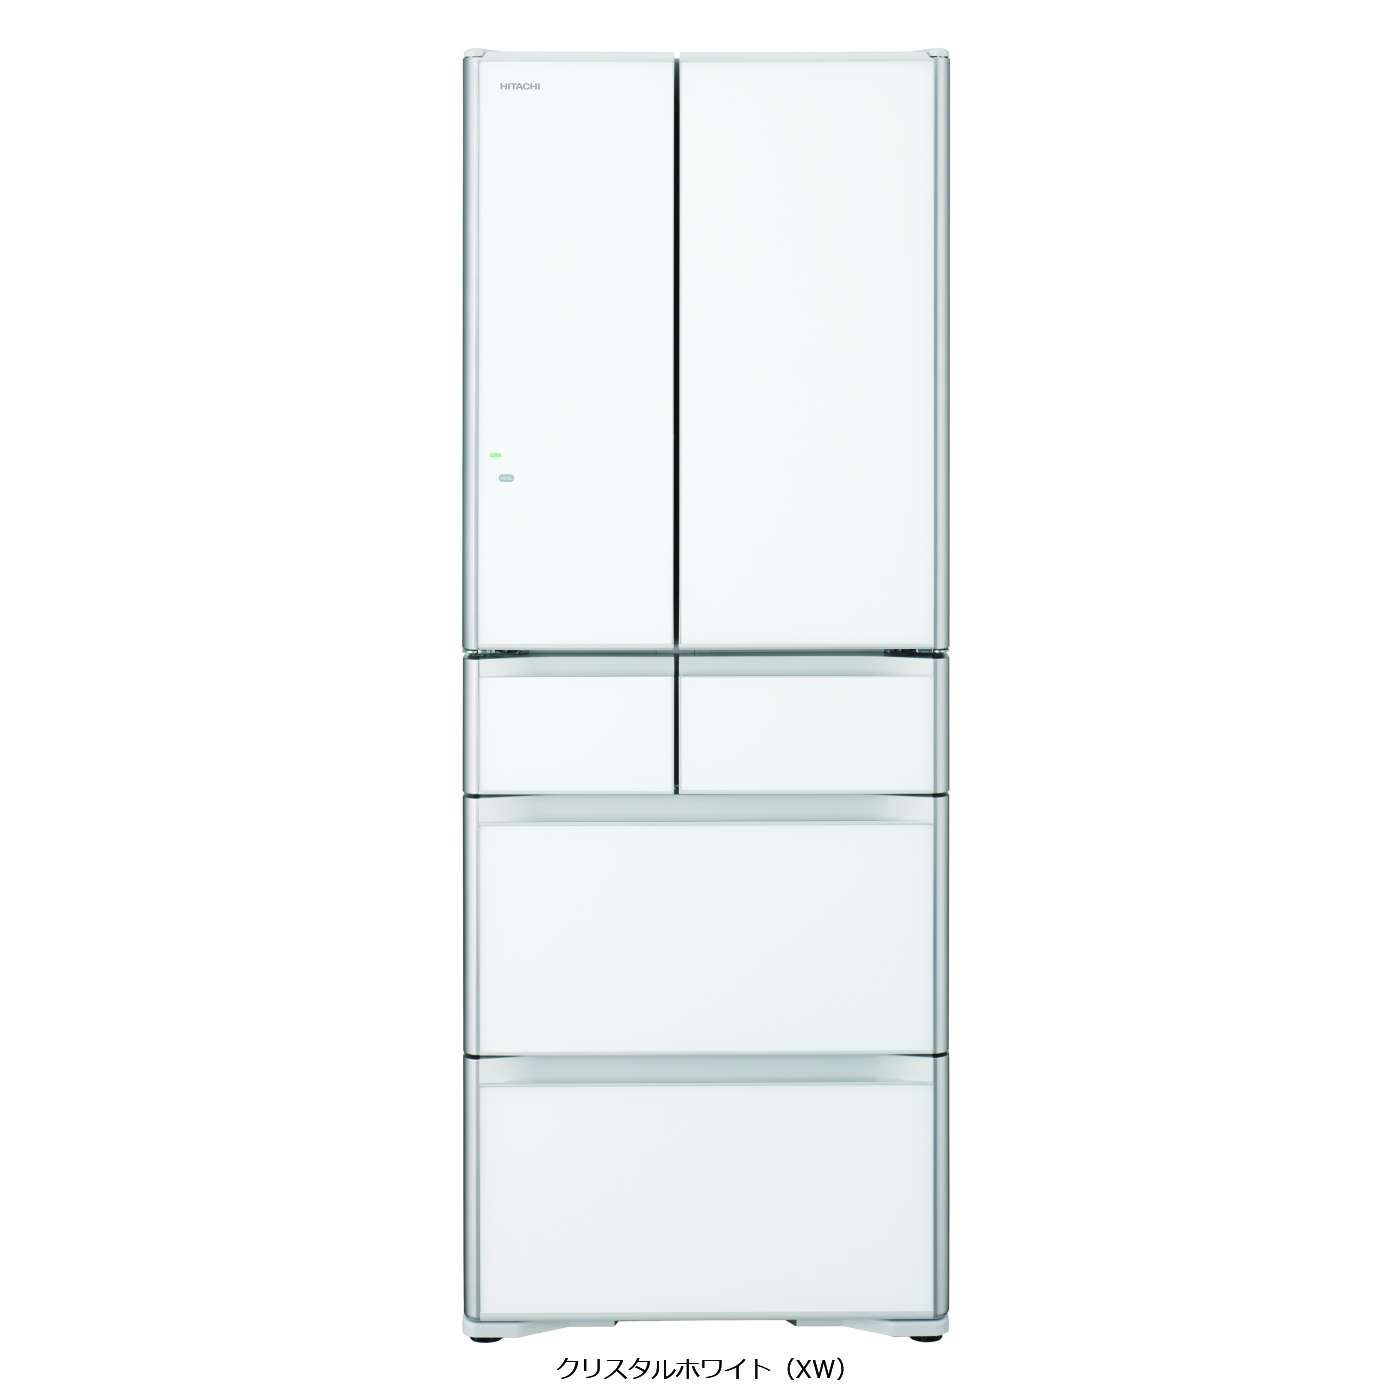 真空チルド プレミアム XGシリーズ ： 冷蔵庫 ： 日立の家電品